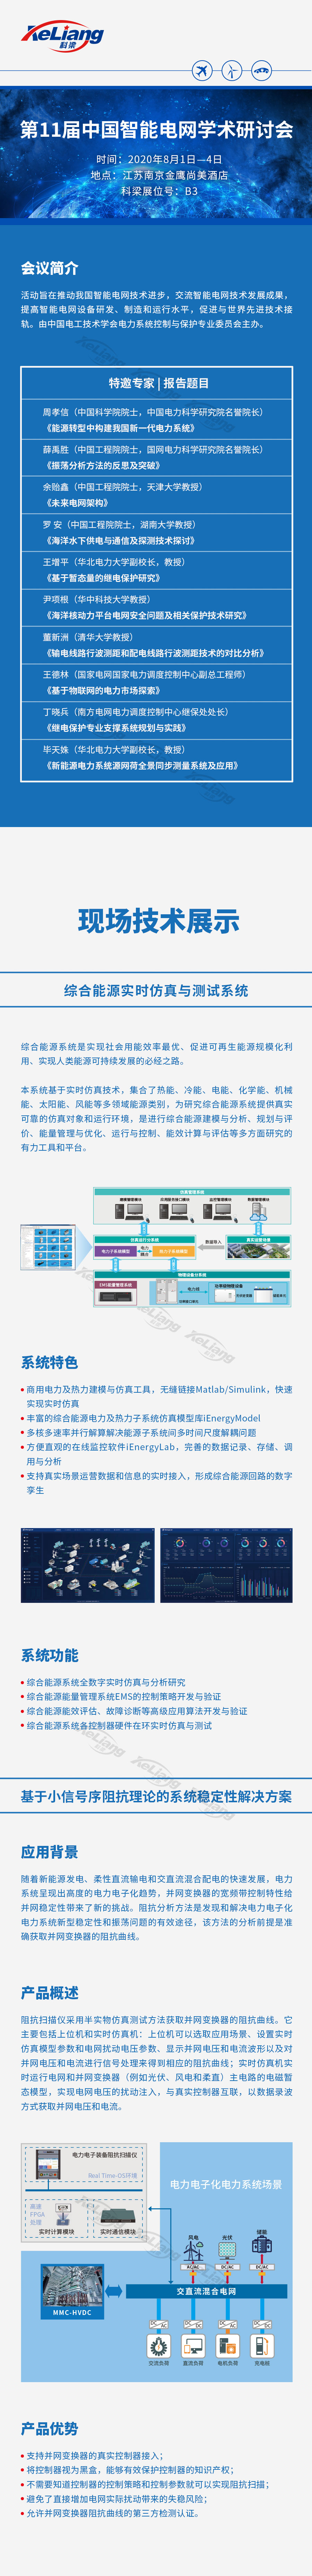 第11届中国智能电网学术研讨会 (1).jpg